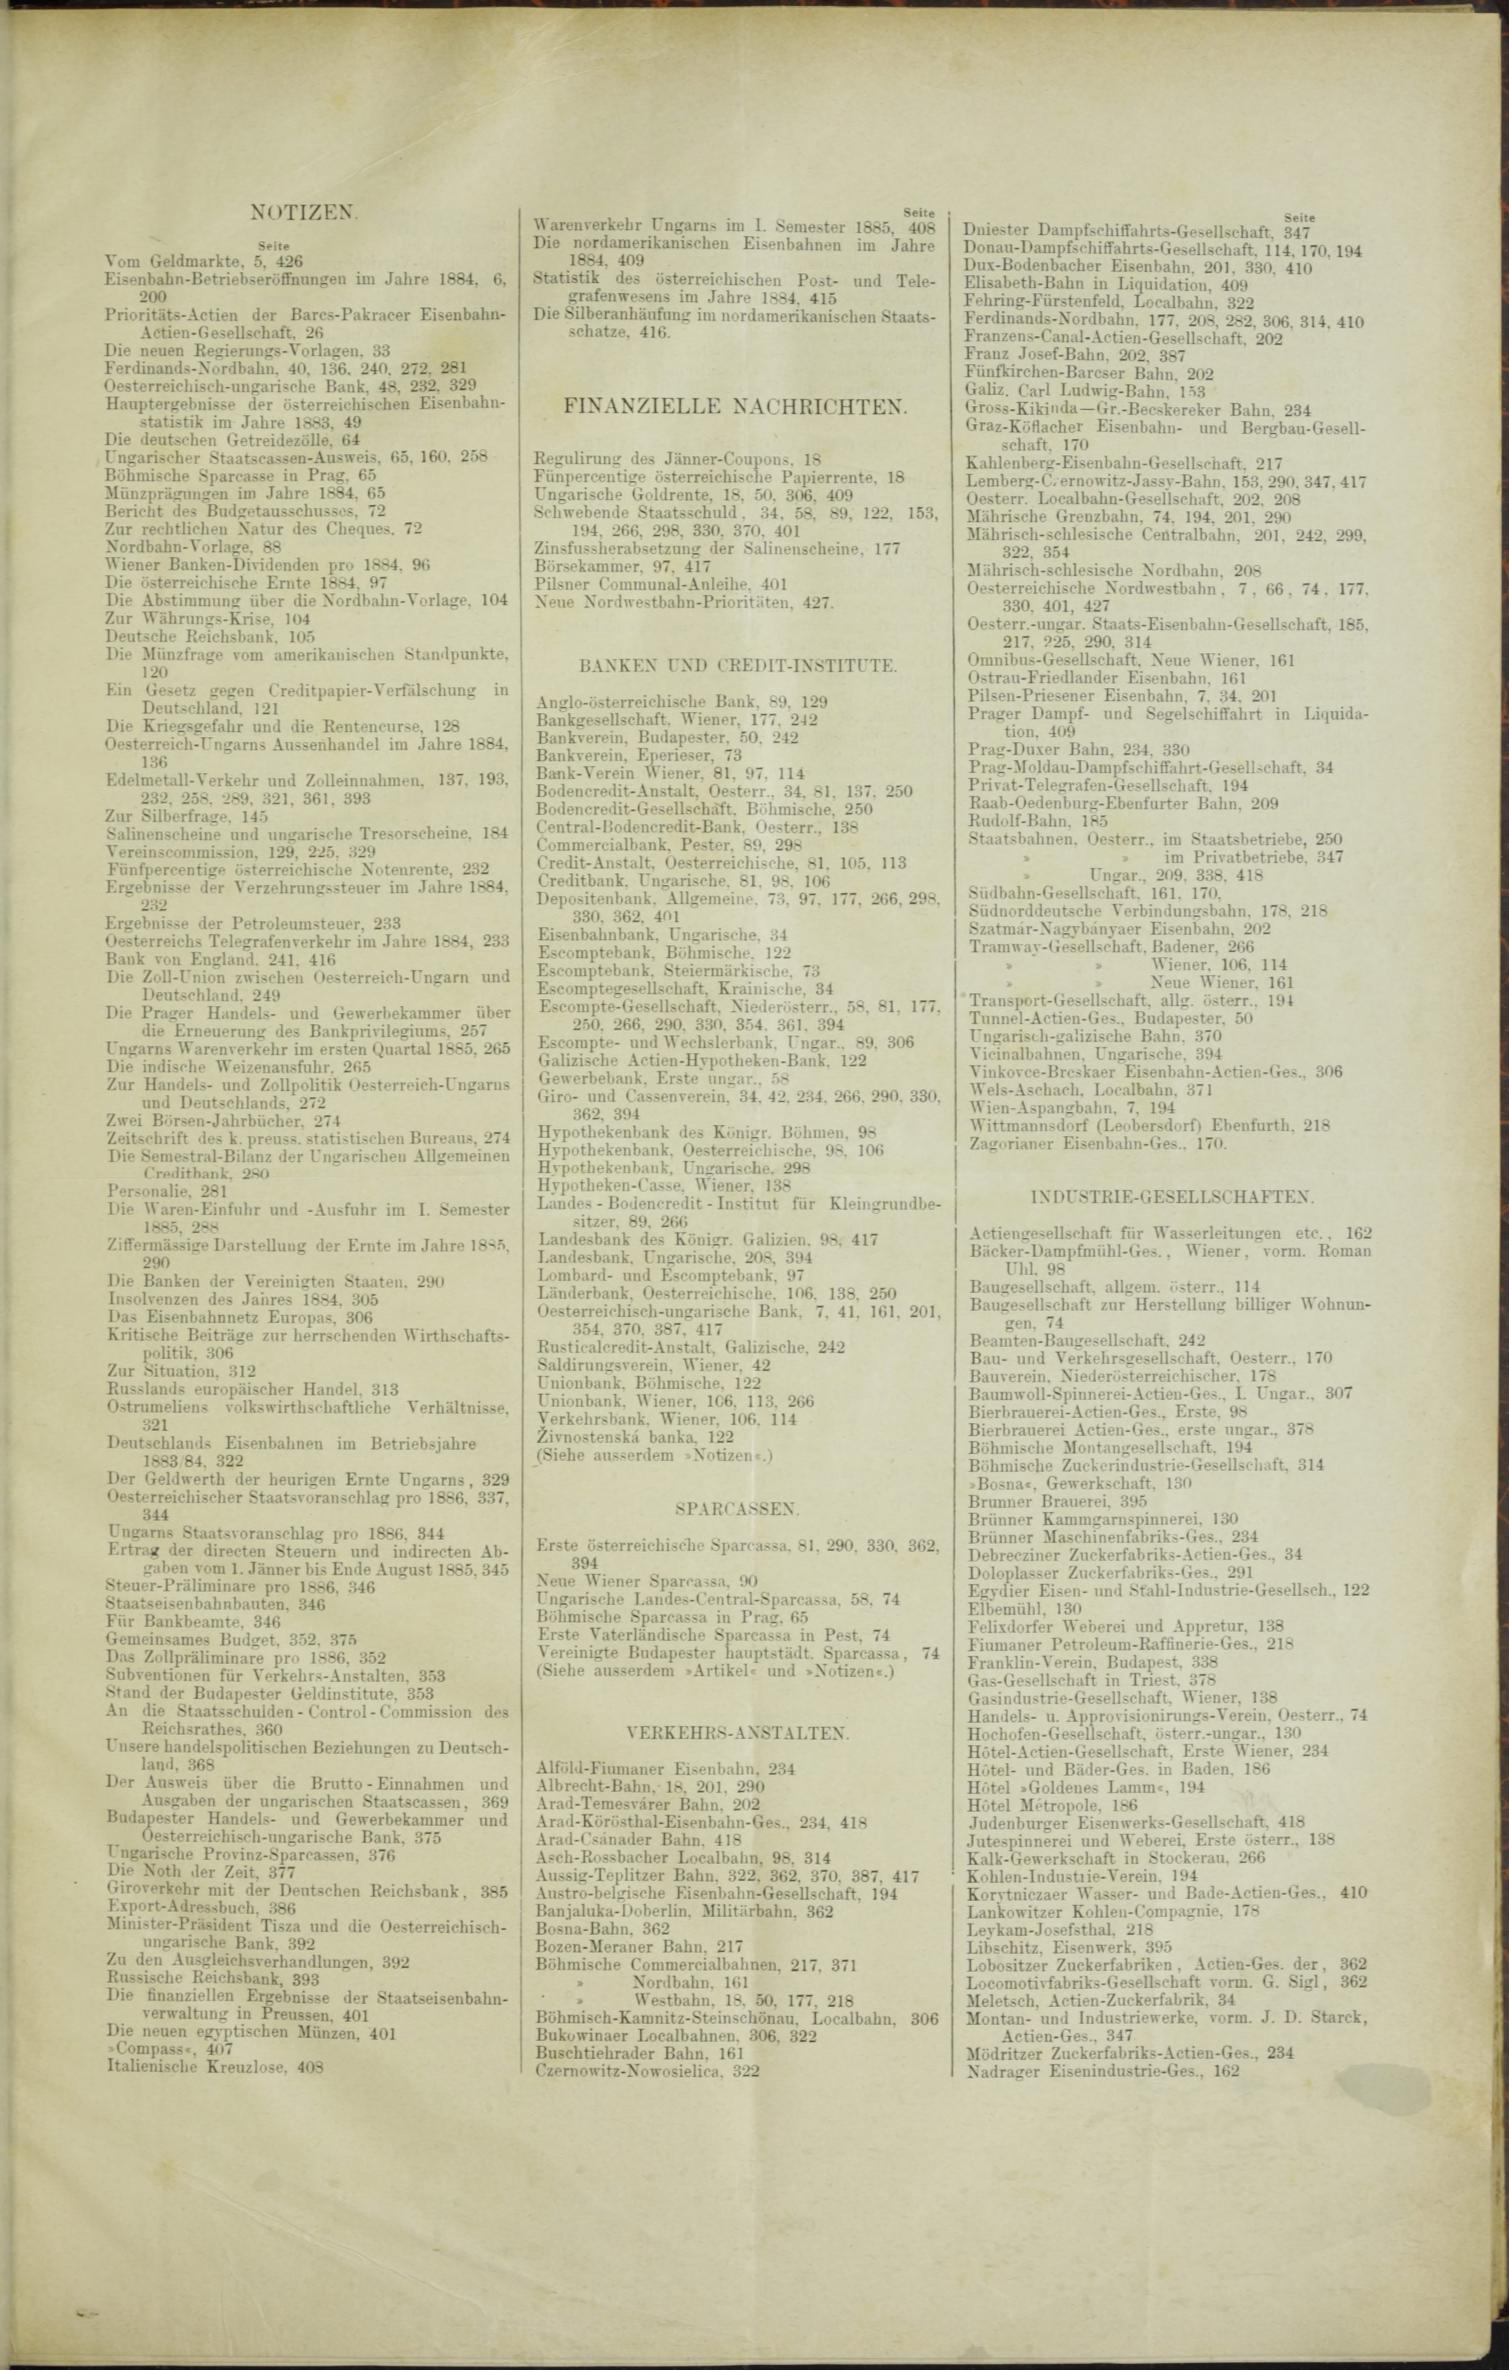 Der Tresor 17.12.1885 - Seite 11